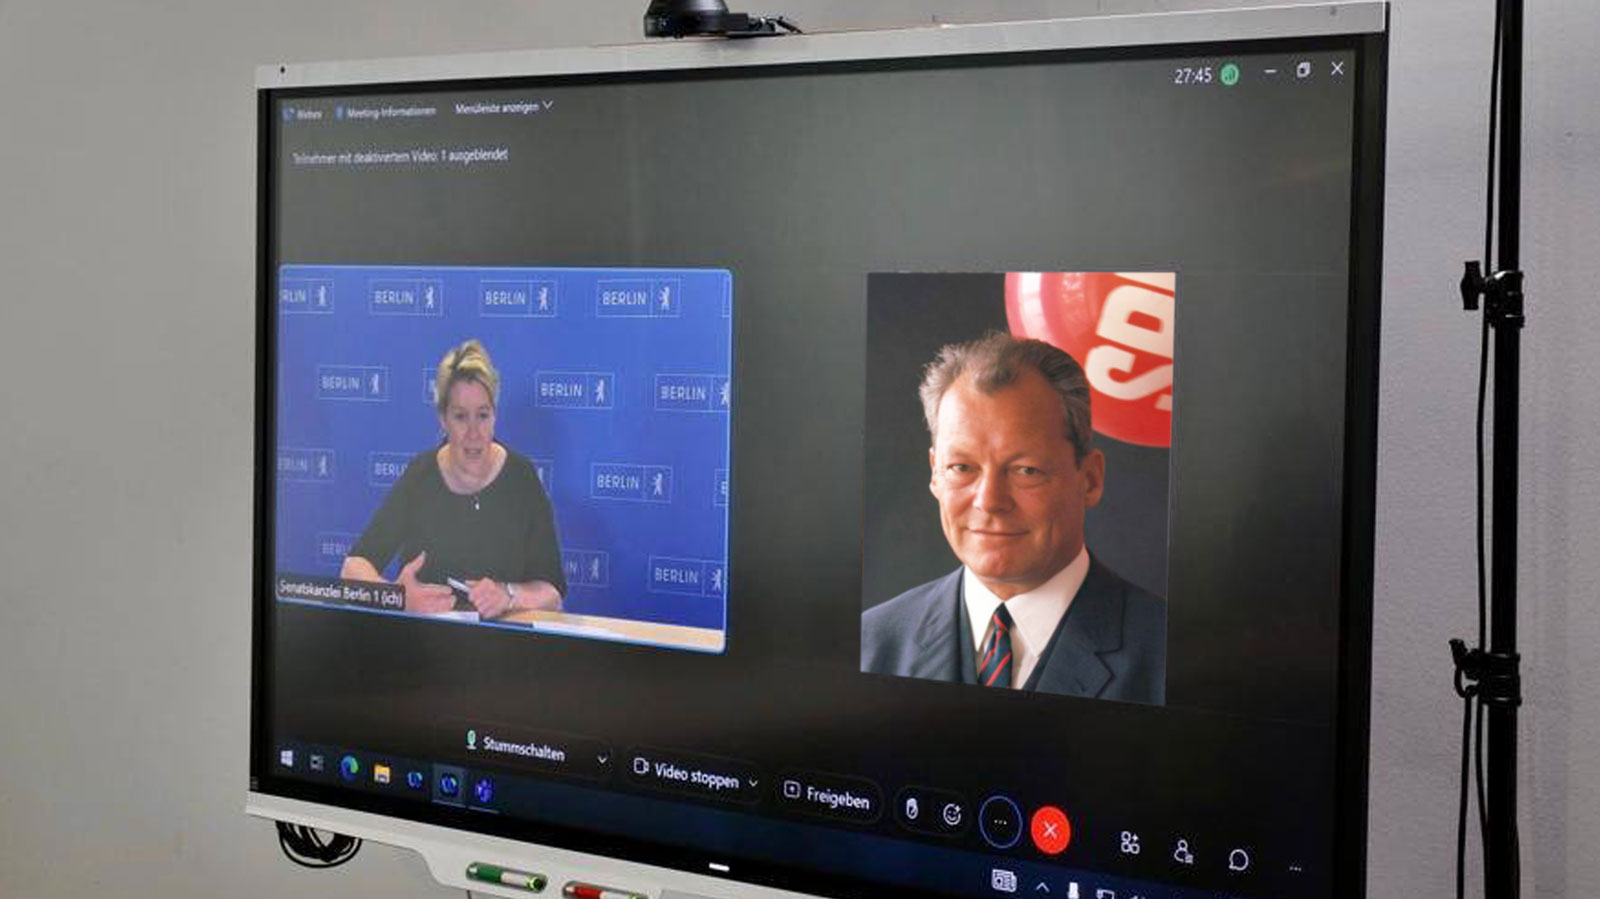 Nach Klitschko-Deepfake: War Giffeys Videocall mit Willy Brandt neulich ebenfalls unecht?